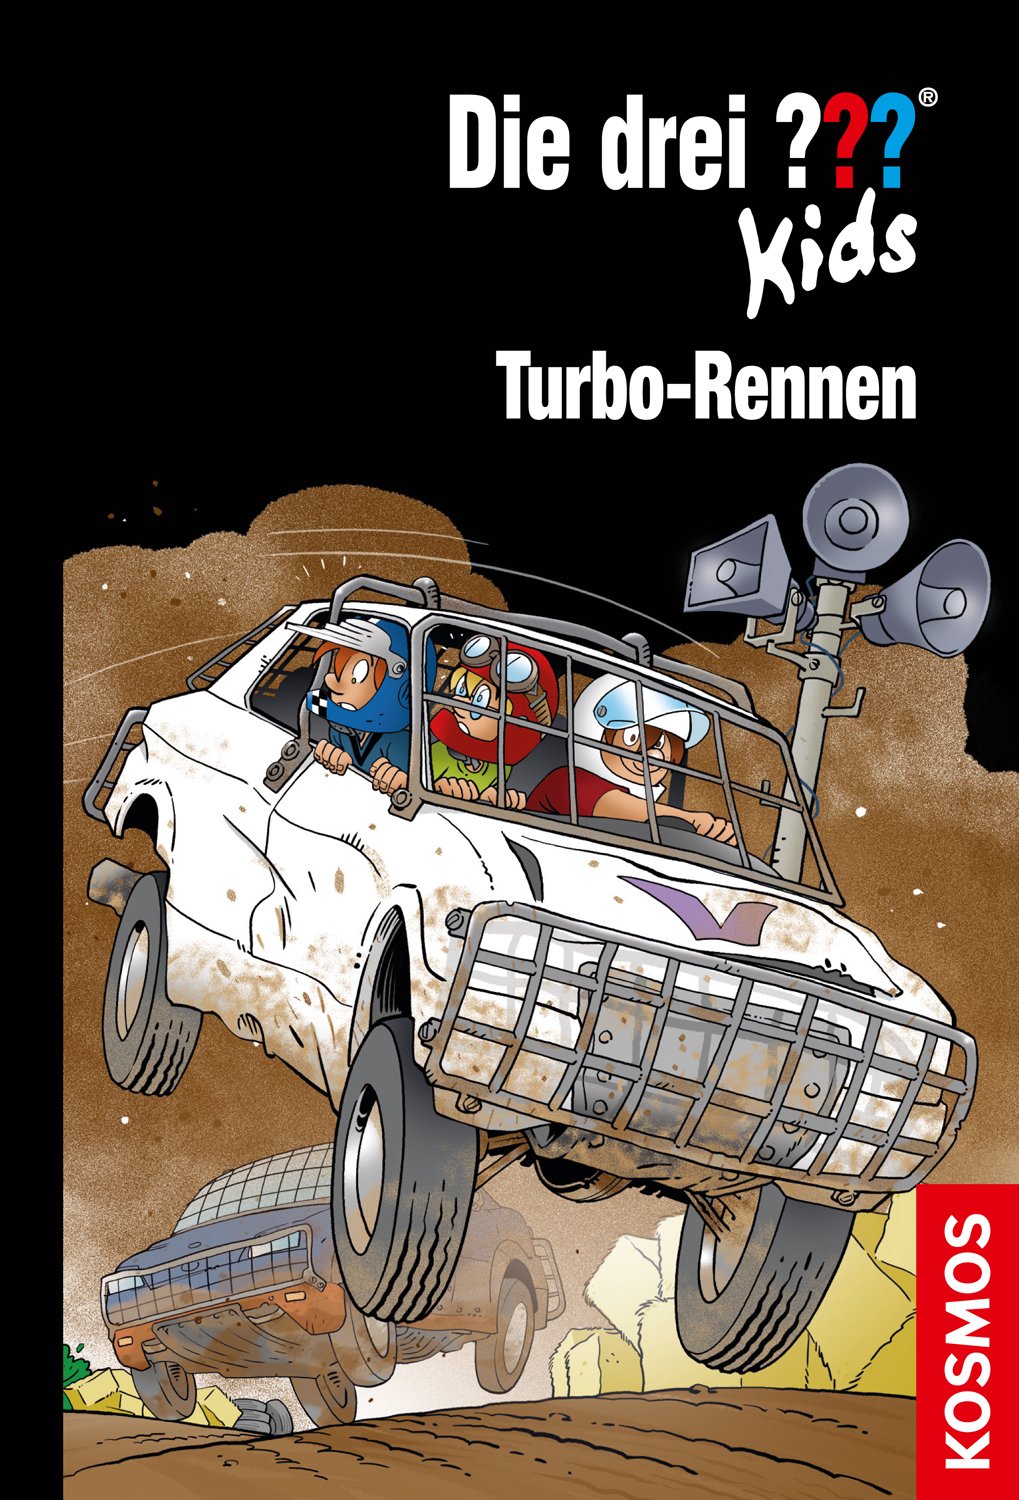 Die Drei ??? (Fragezeichen) Kids, Buch-Band 81: Die drei ??? Kids, 81, Turbo-Rennen